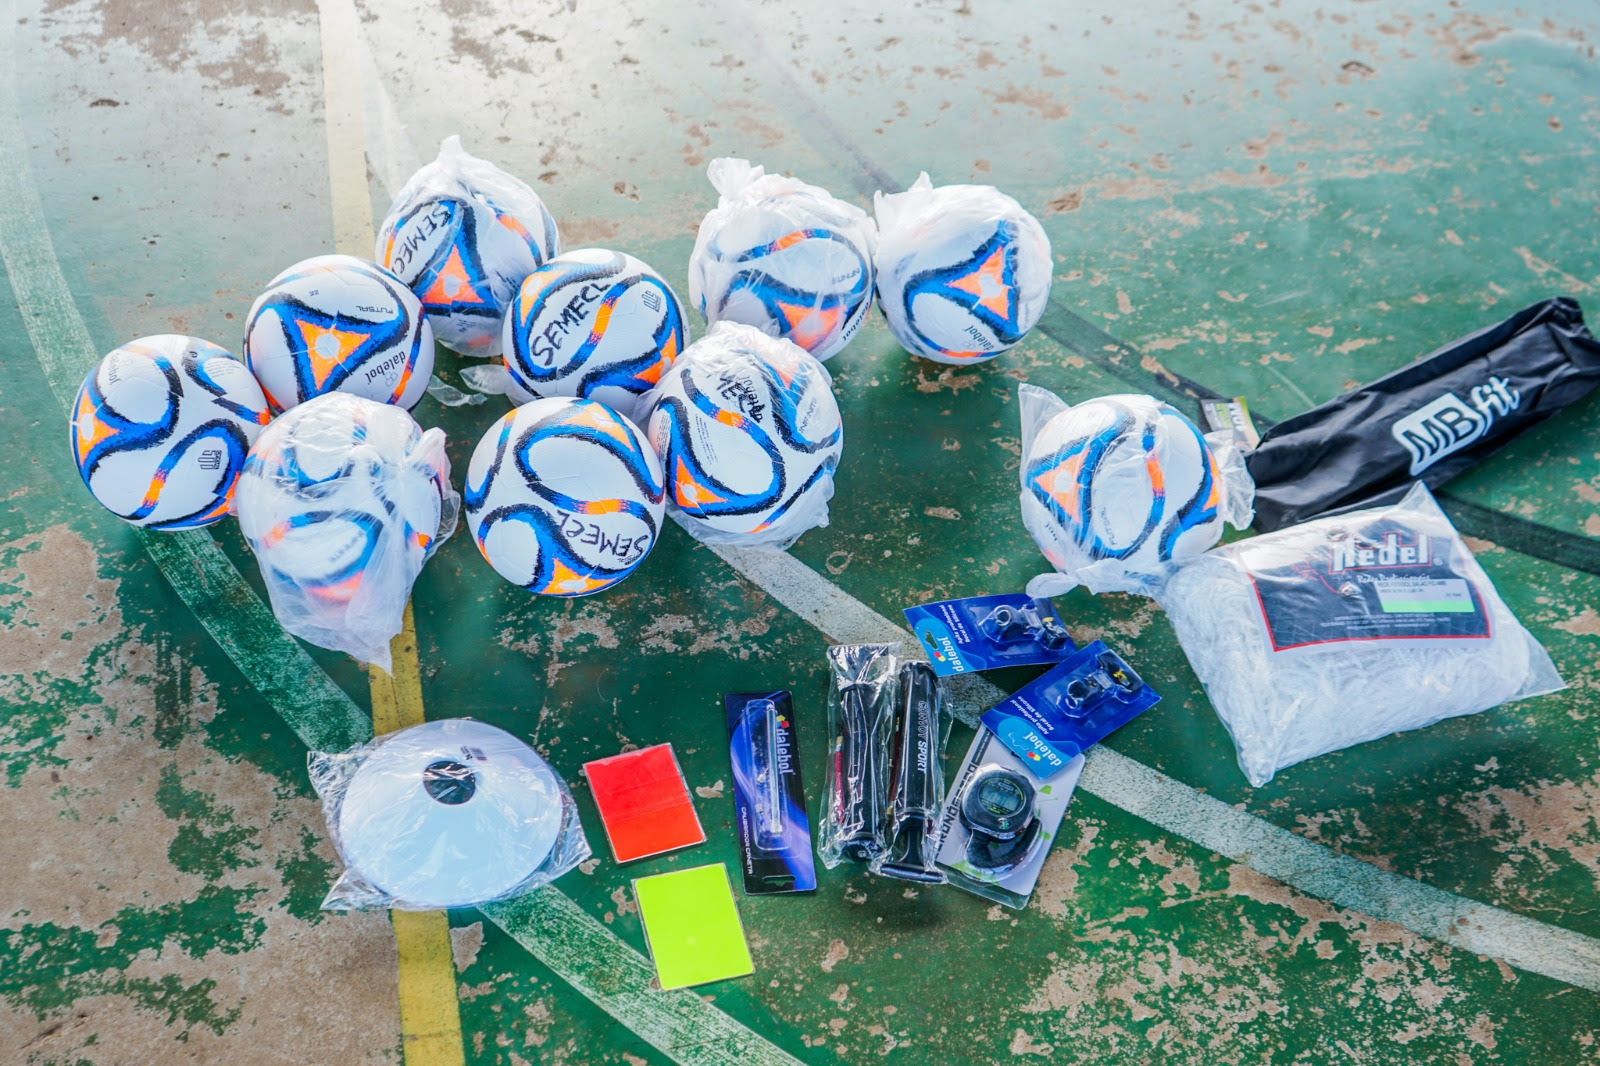 Cada kit traz 12 bolas de futebol, 3 bolas de iniciação esportiva, um par de redes para as traves, 10 cones, 10 pratos, uma escada de agilidade, duas bombas de ar, um cronômetro, um calibrador, um placar de mesa e dois pares de cartões.